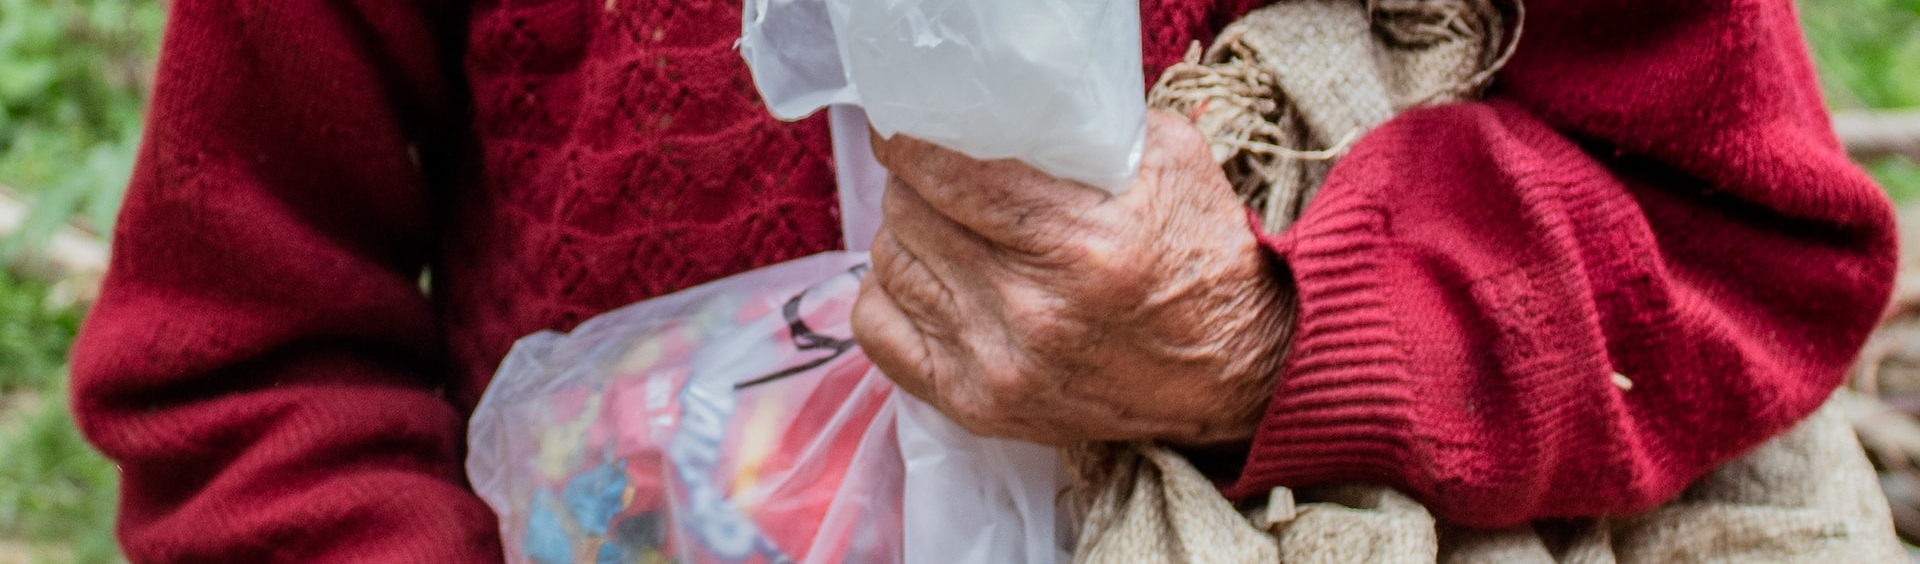 80 anos e três jornadas de trabalho: a vida de uma guatemalteca indocumentada nos EUA